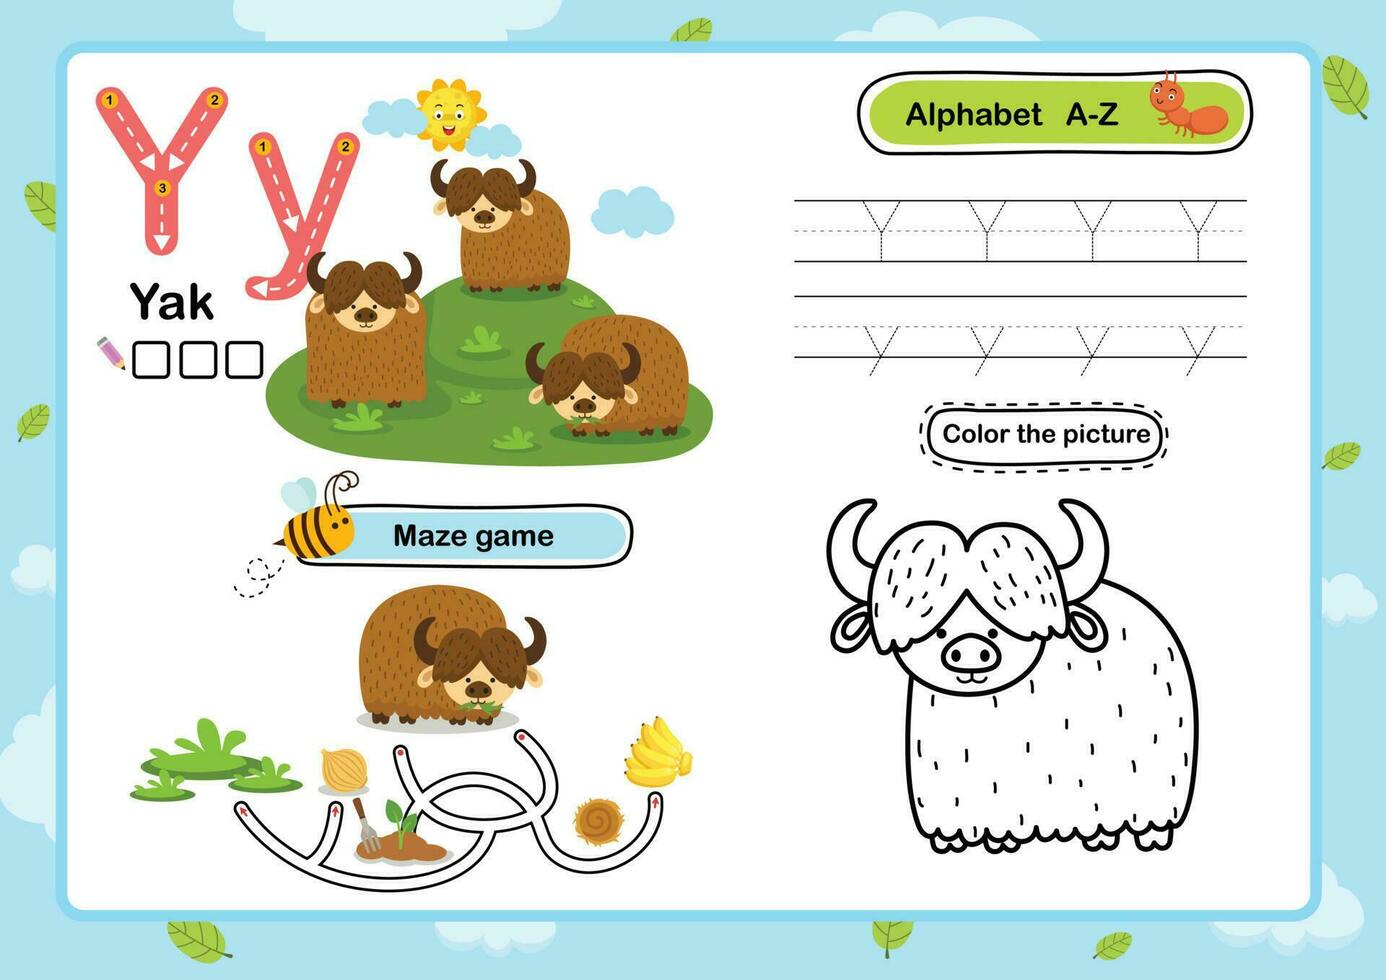 Ejercicio de letra del alfabeto y-yak con ilustración de vocabulario de dibujos animados, vector